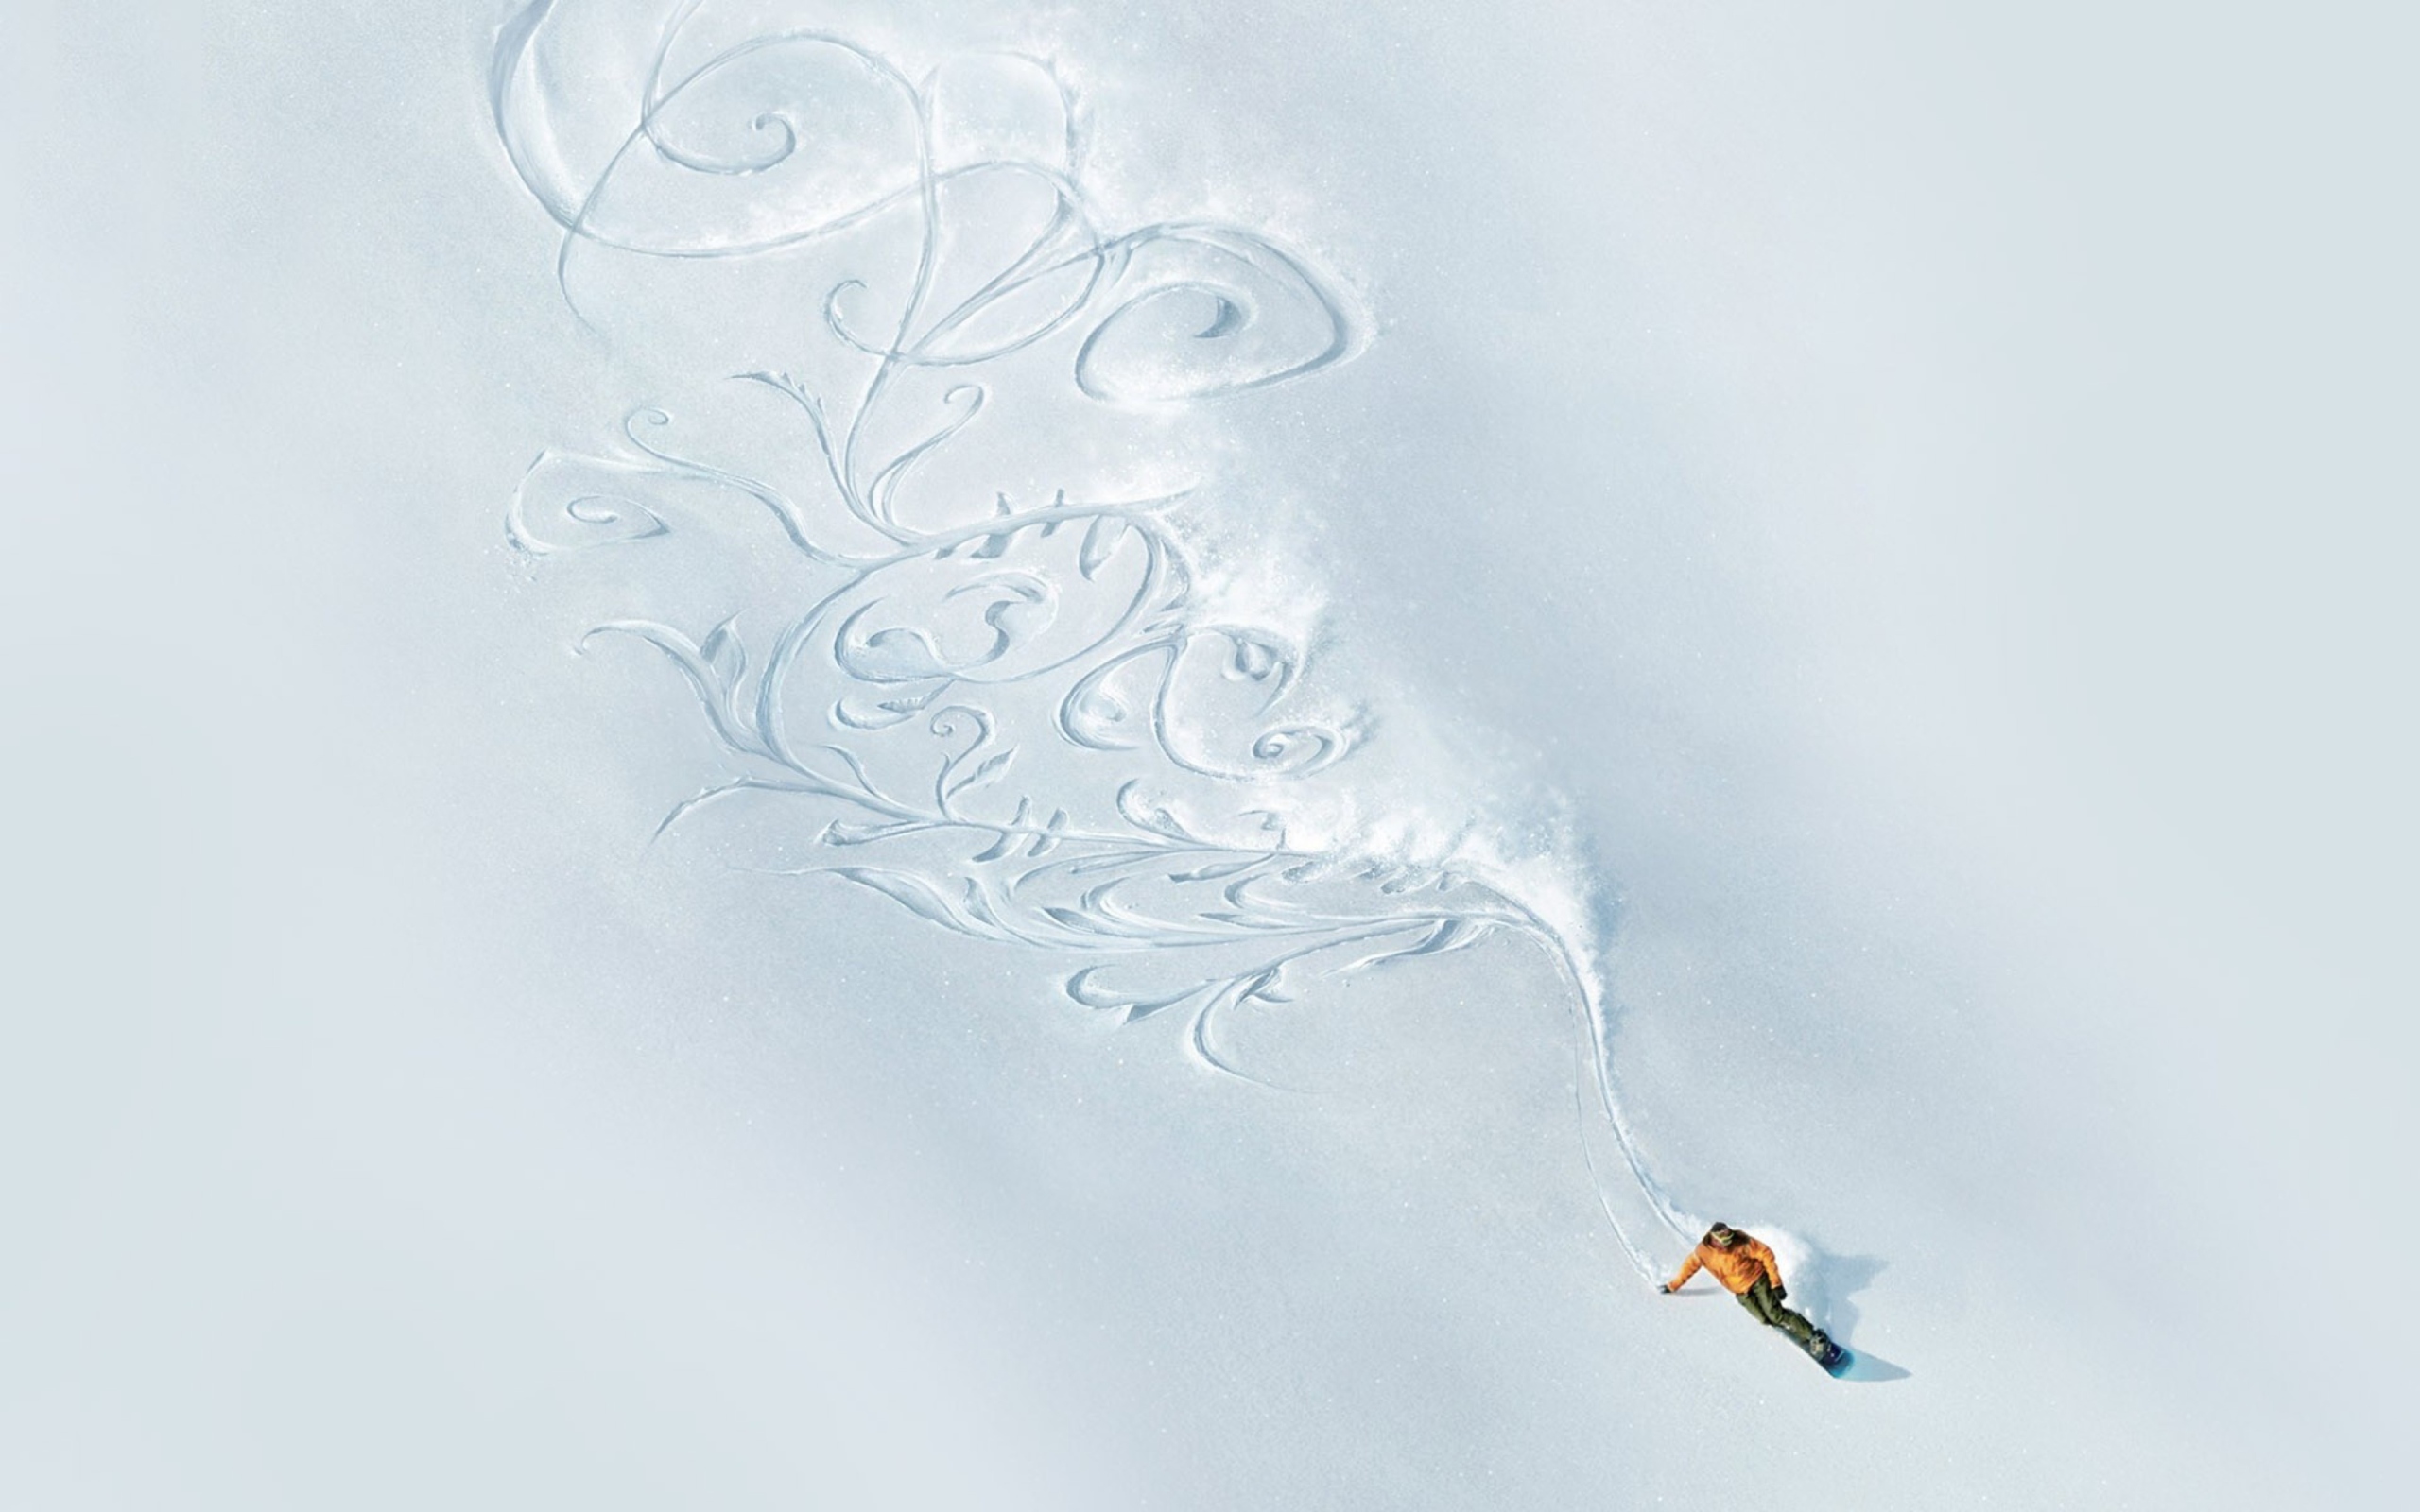 Snowboarding Art wallpaper 2560x1600